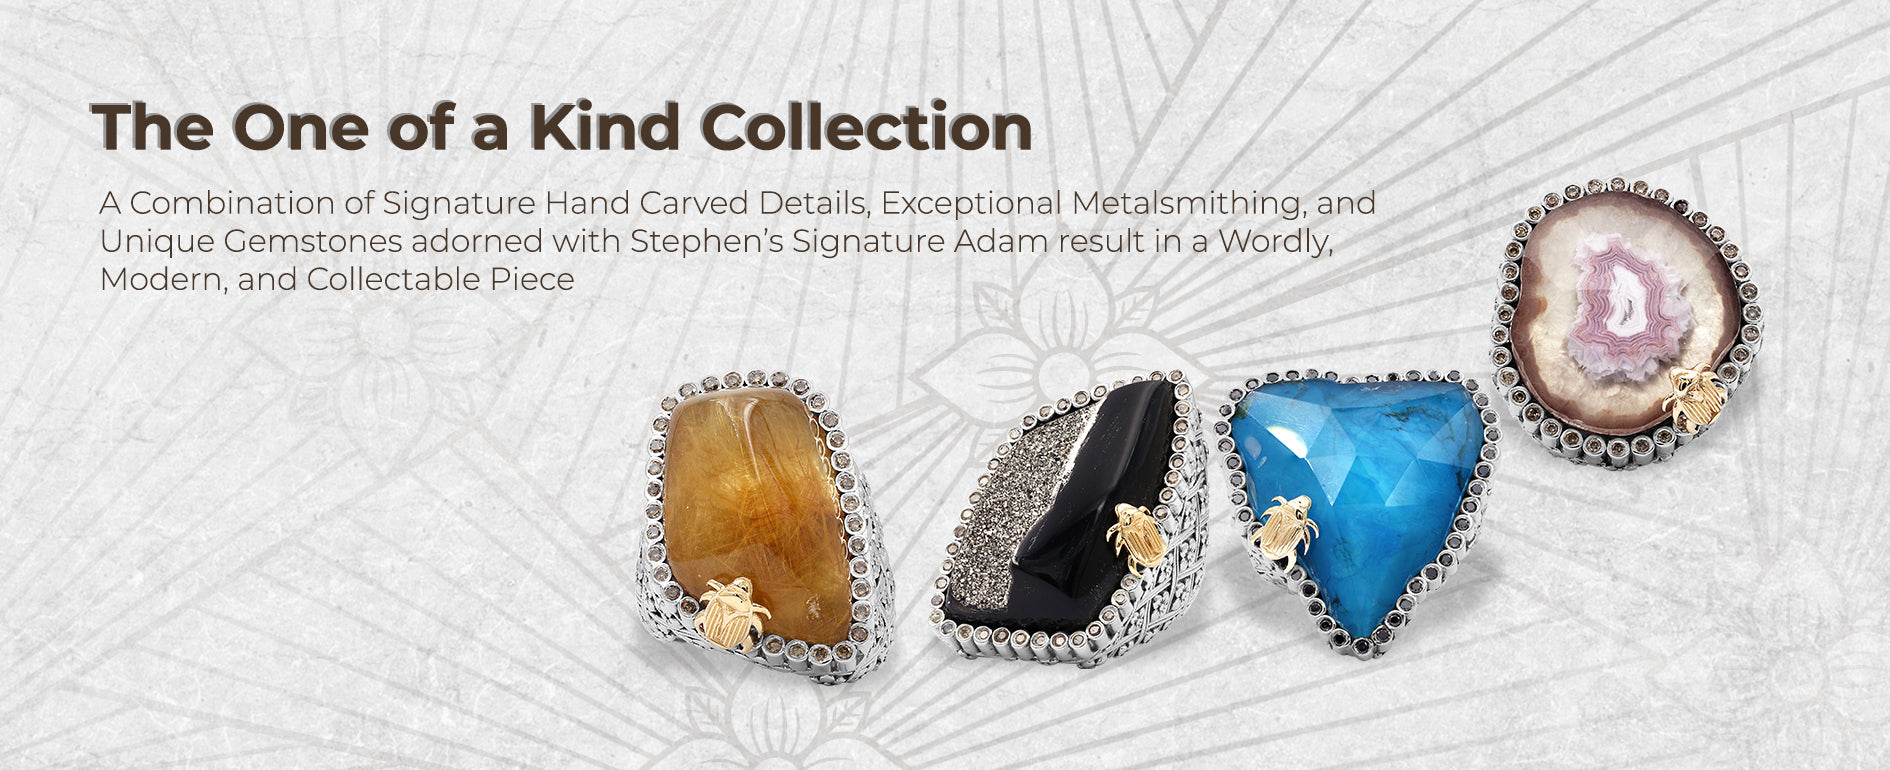 Stephen Dweck Jewelry